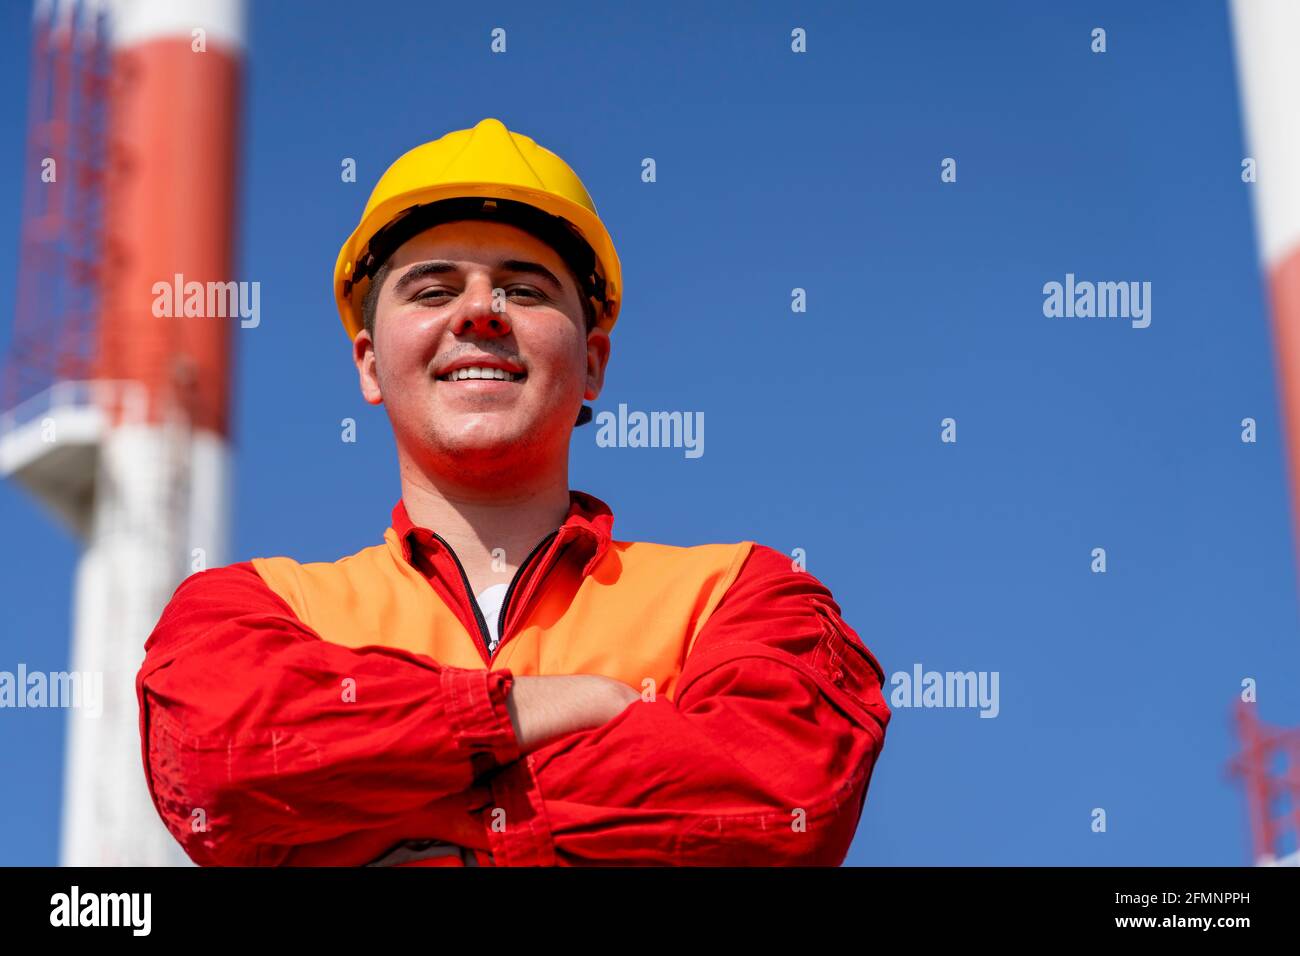 Porträt eines jungen Arbeiters in Red Coveralls und Yellow HardHat gegen die Schornsteine des Kraftwerks und den blauen Himmel. Lächelnder Arbeiter in schützender Arbeitskleidung. Stockfoto